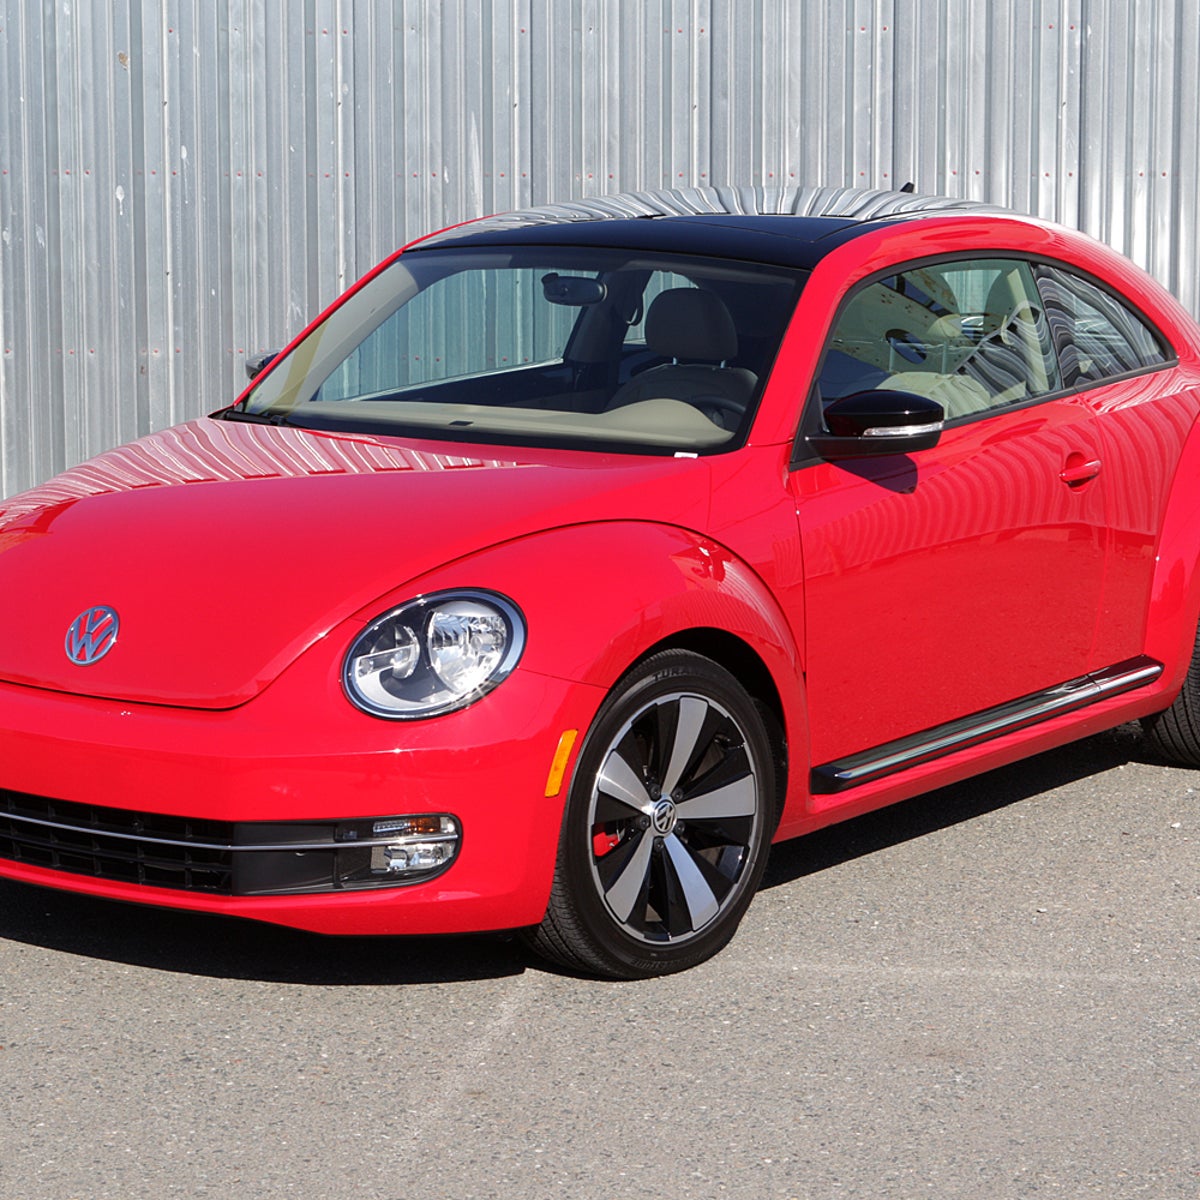 2012 Volkswagen Beetle 2.0T Turbo review: 2012 Volkswagen Beetle 2.0T Turbo  - CNET